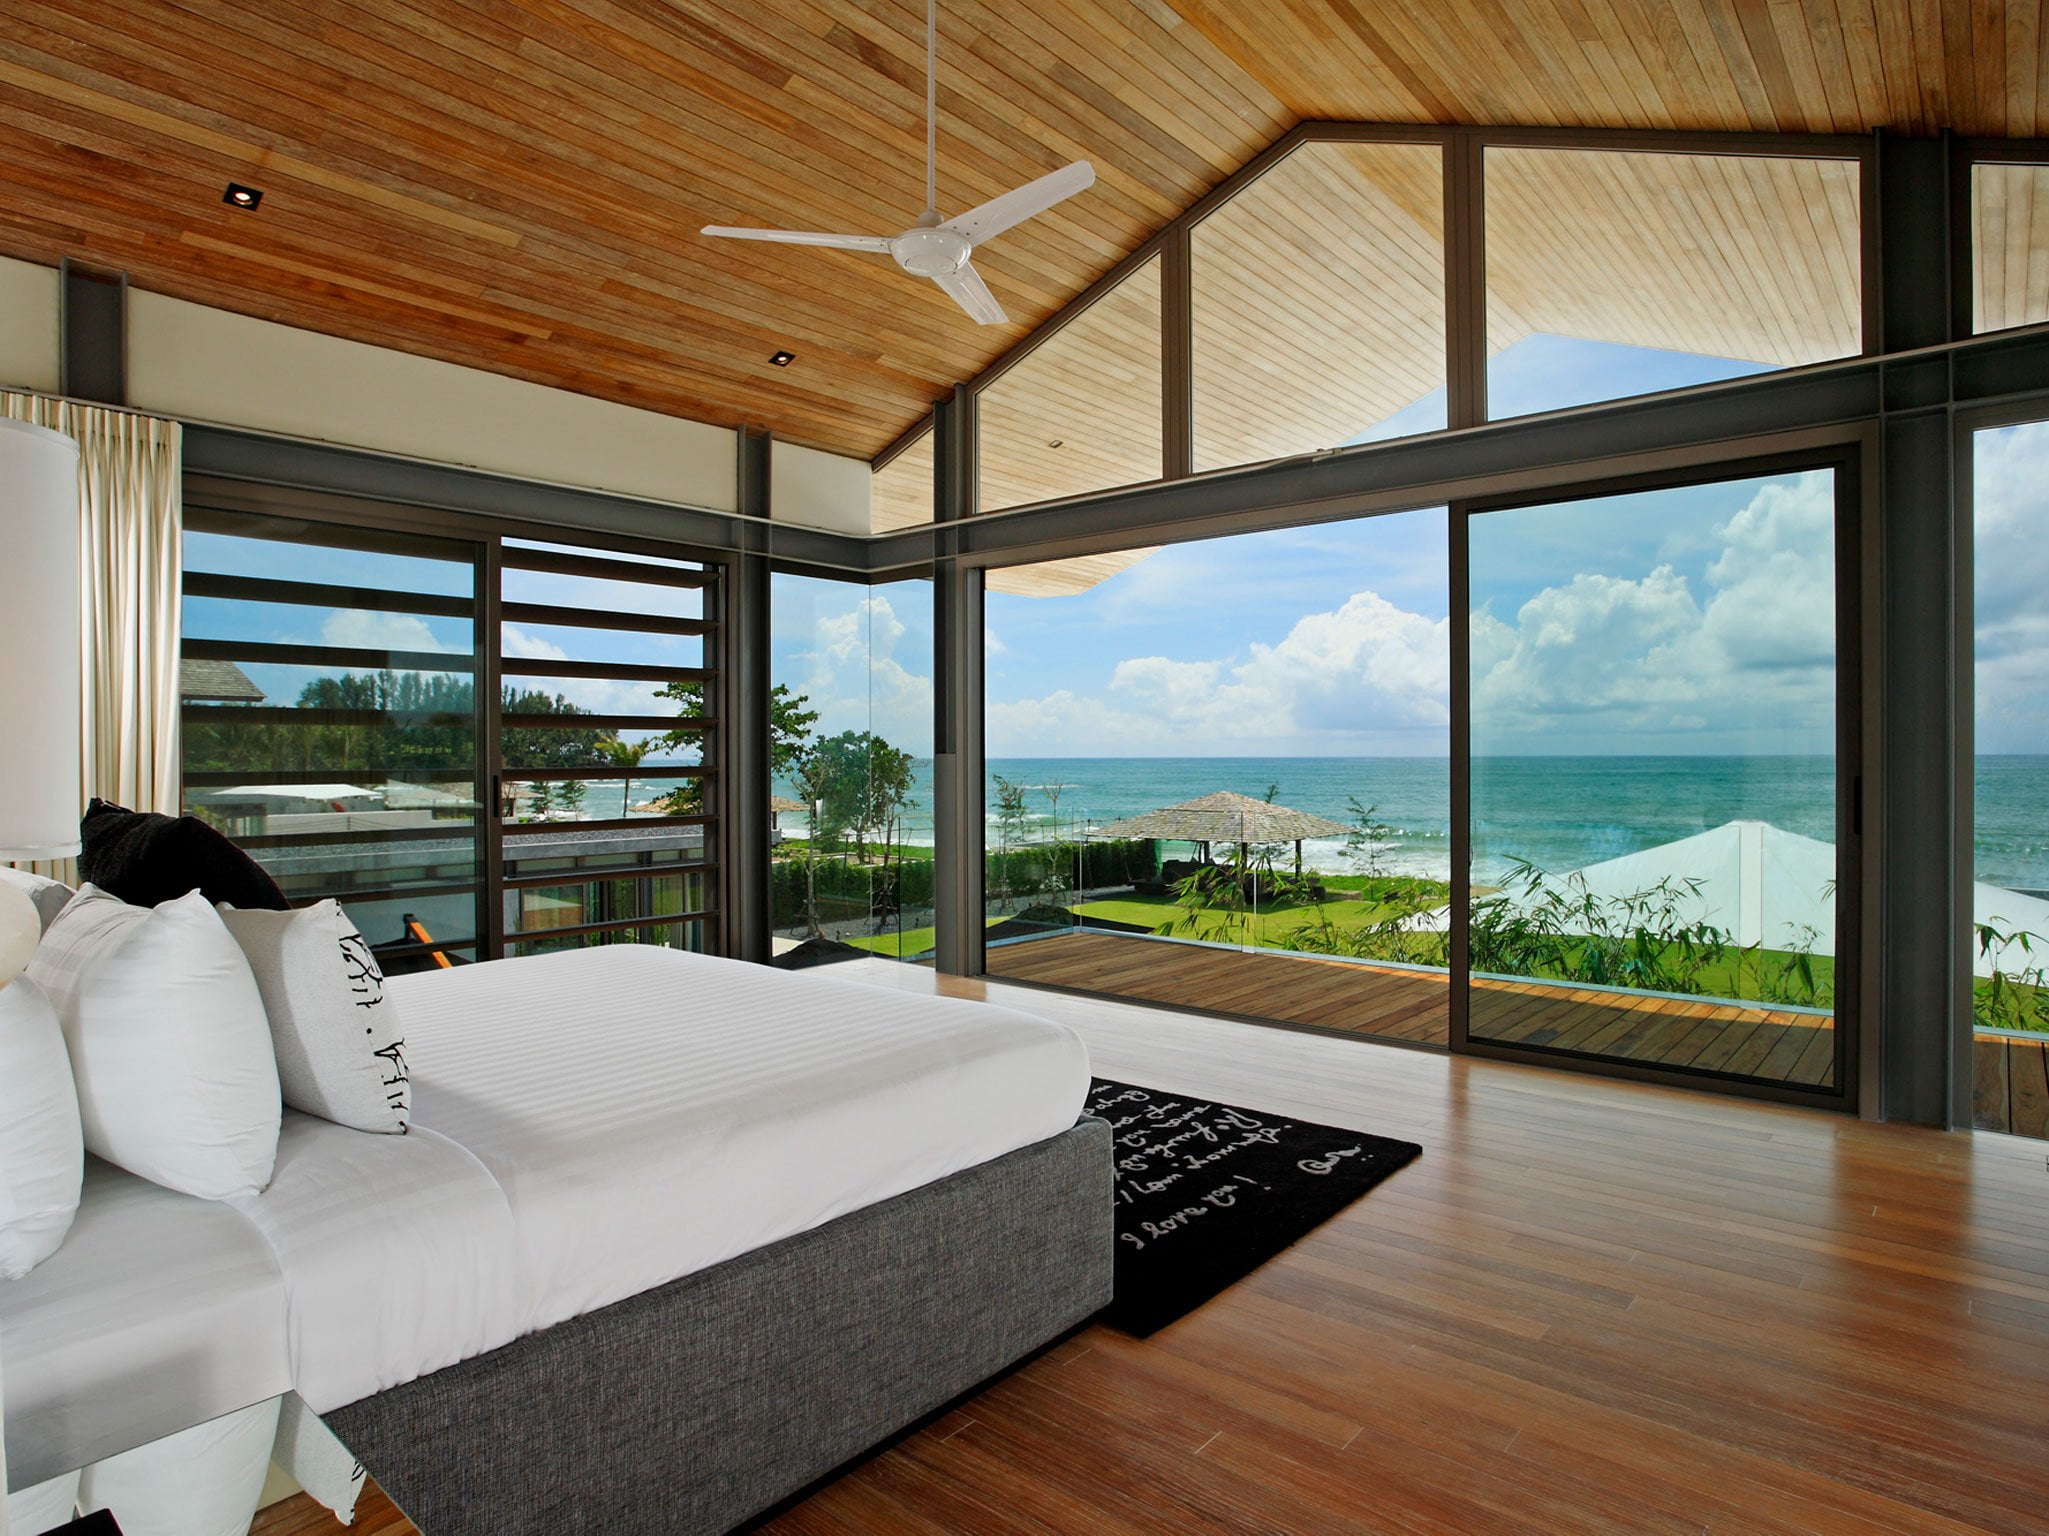 007 villa essenza stunning bedroom outlook